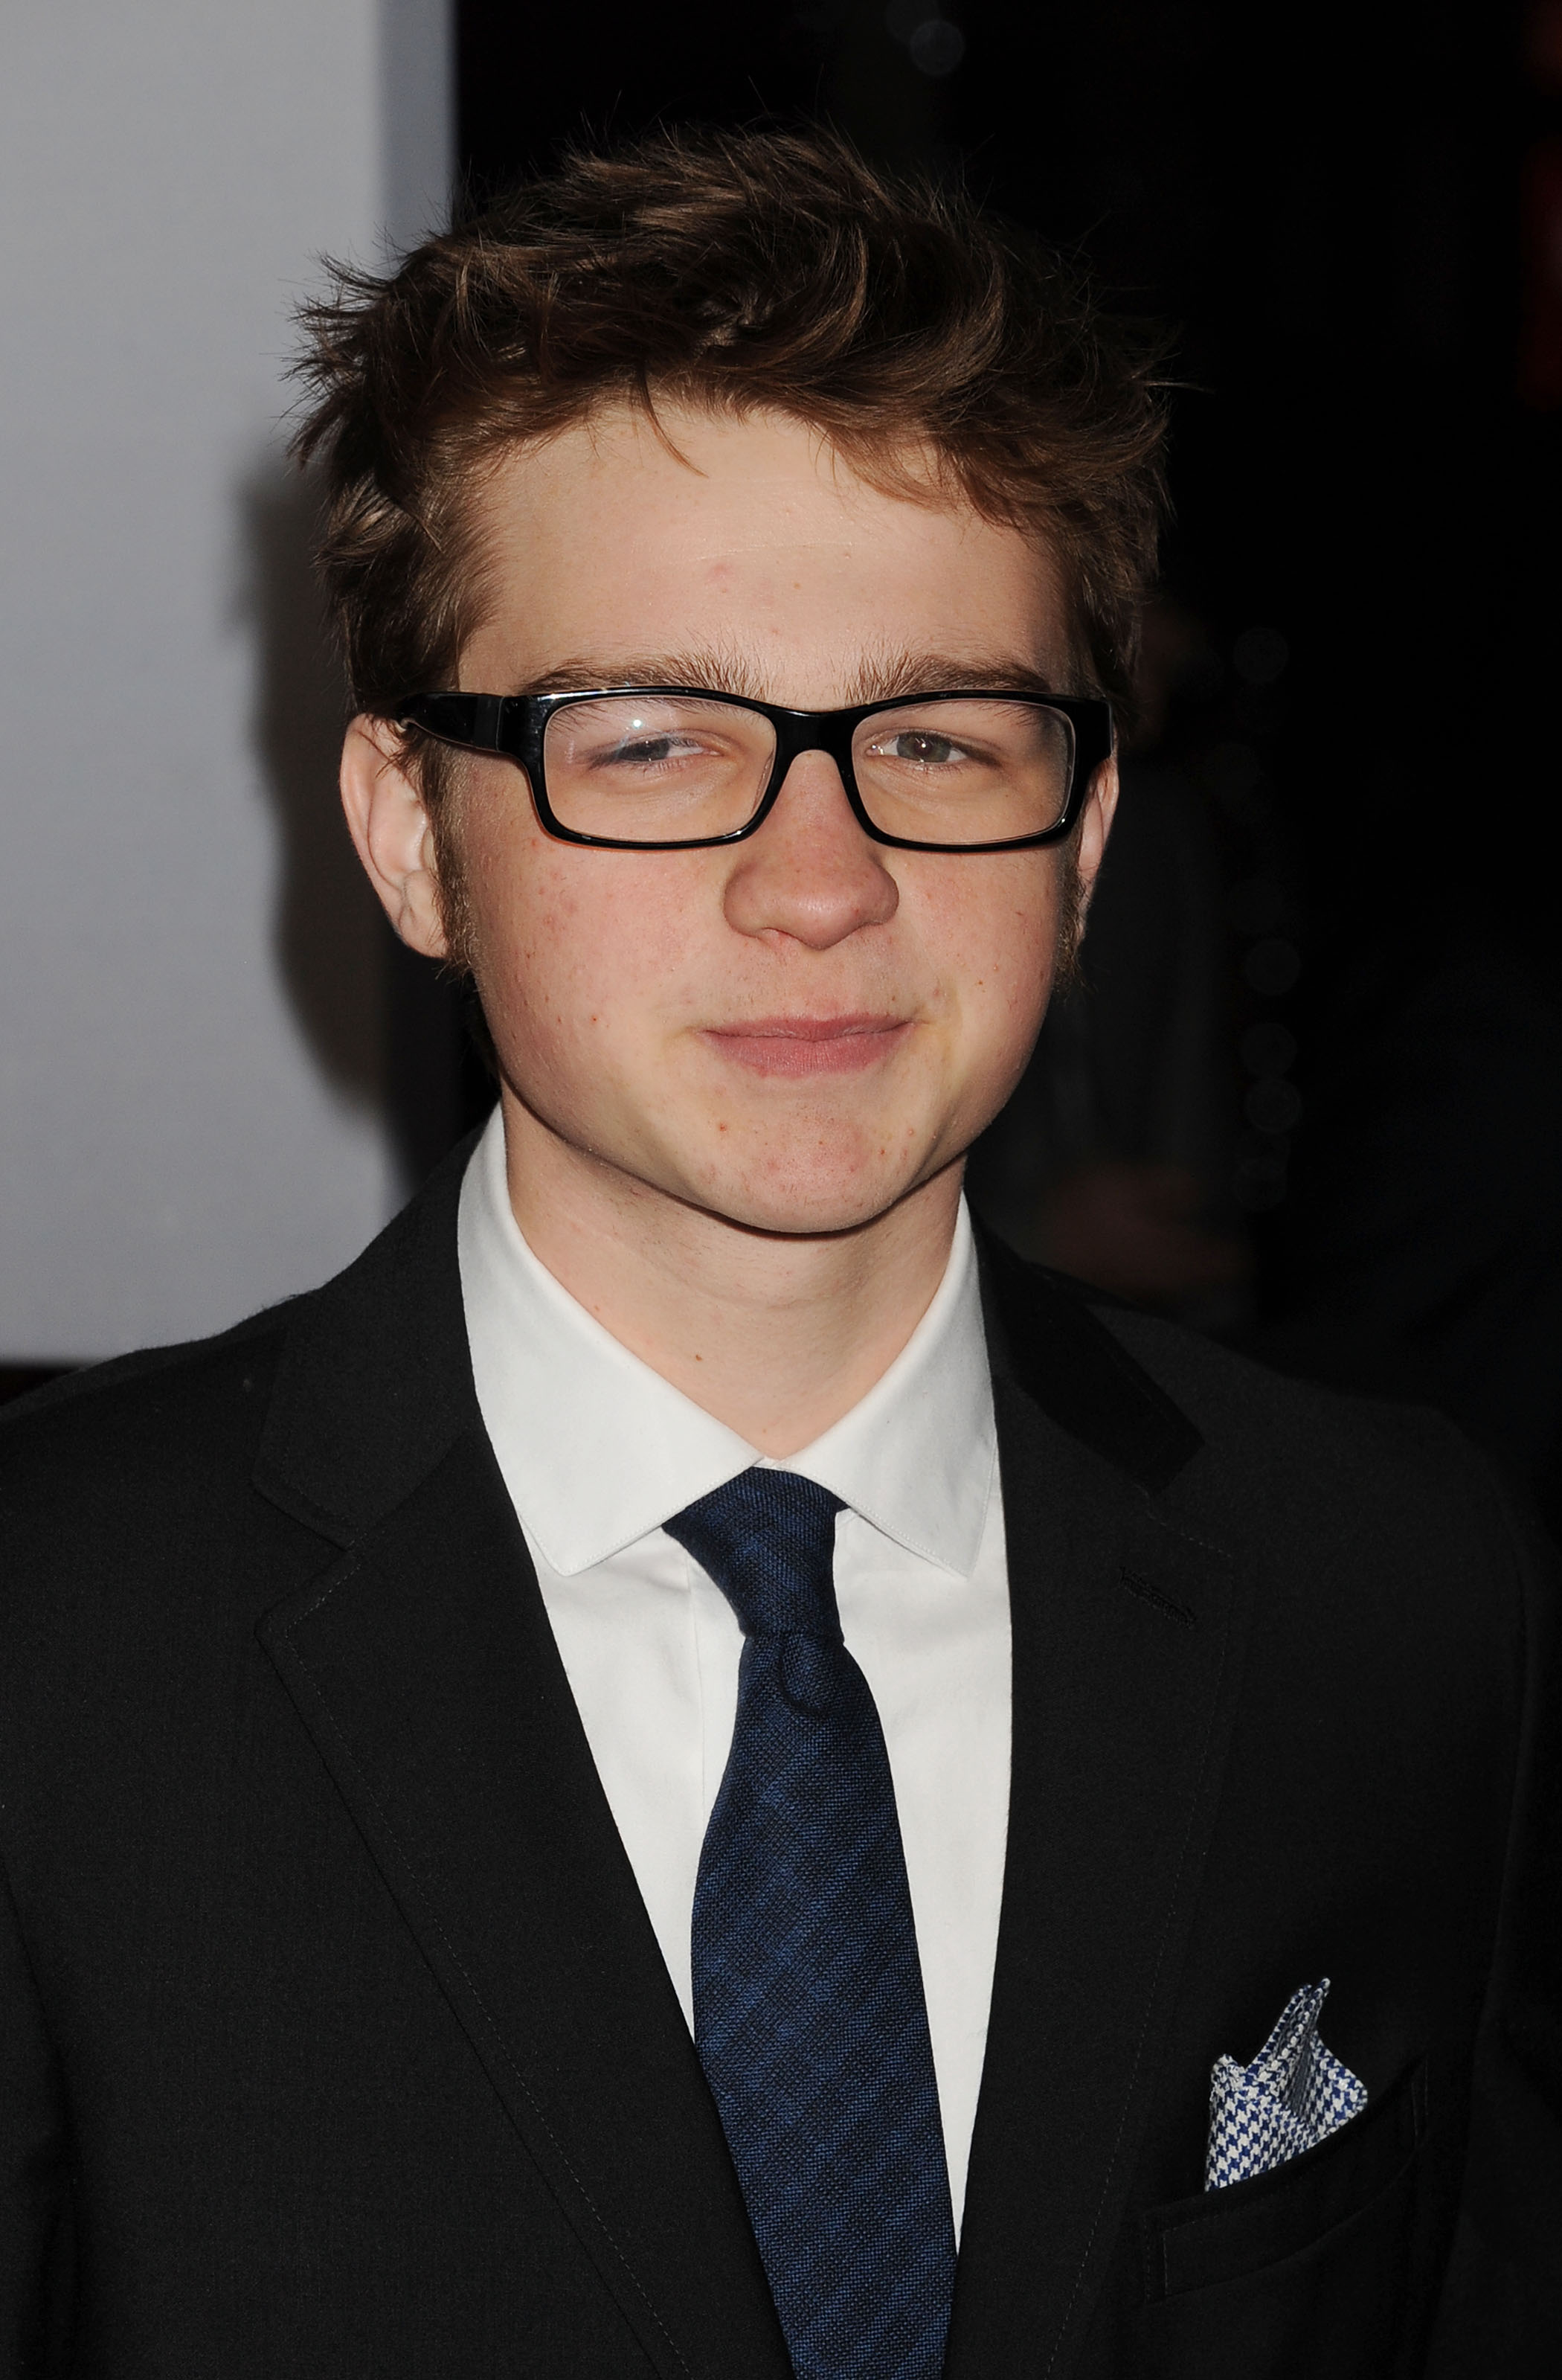 Der Schauspieler bei den People's Choice Awards 2012 in Los Angeles | Quelle: Getty Images